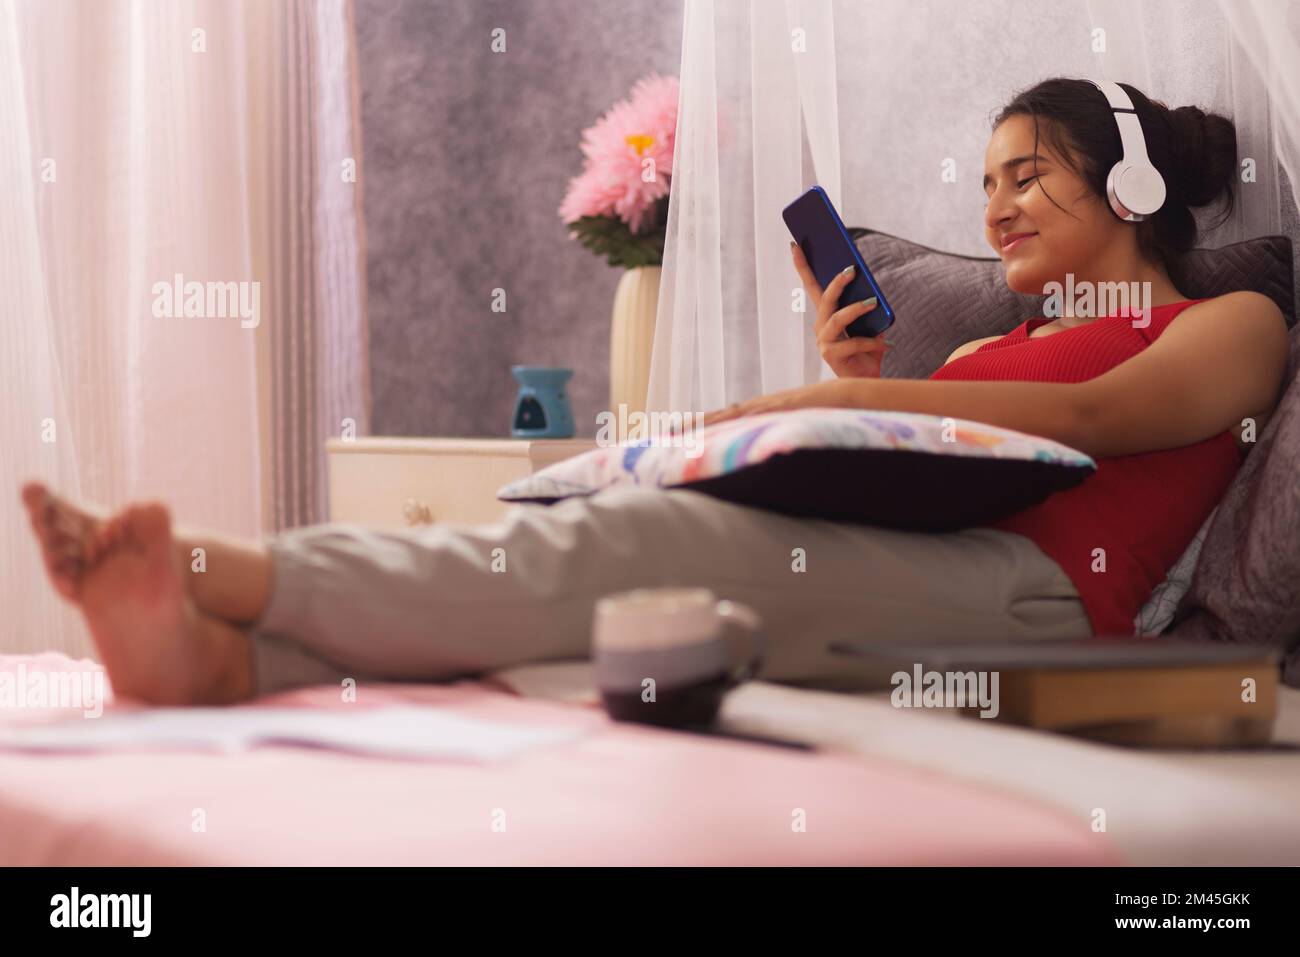 Ragazza adolescente che ascolta musica con le cuffie mentre si rilassa a letto Foto Stock